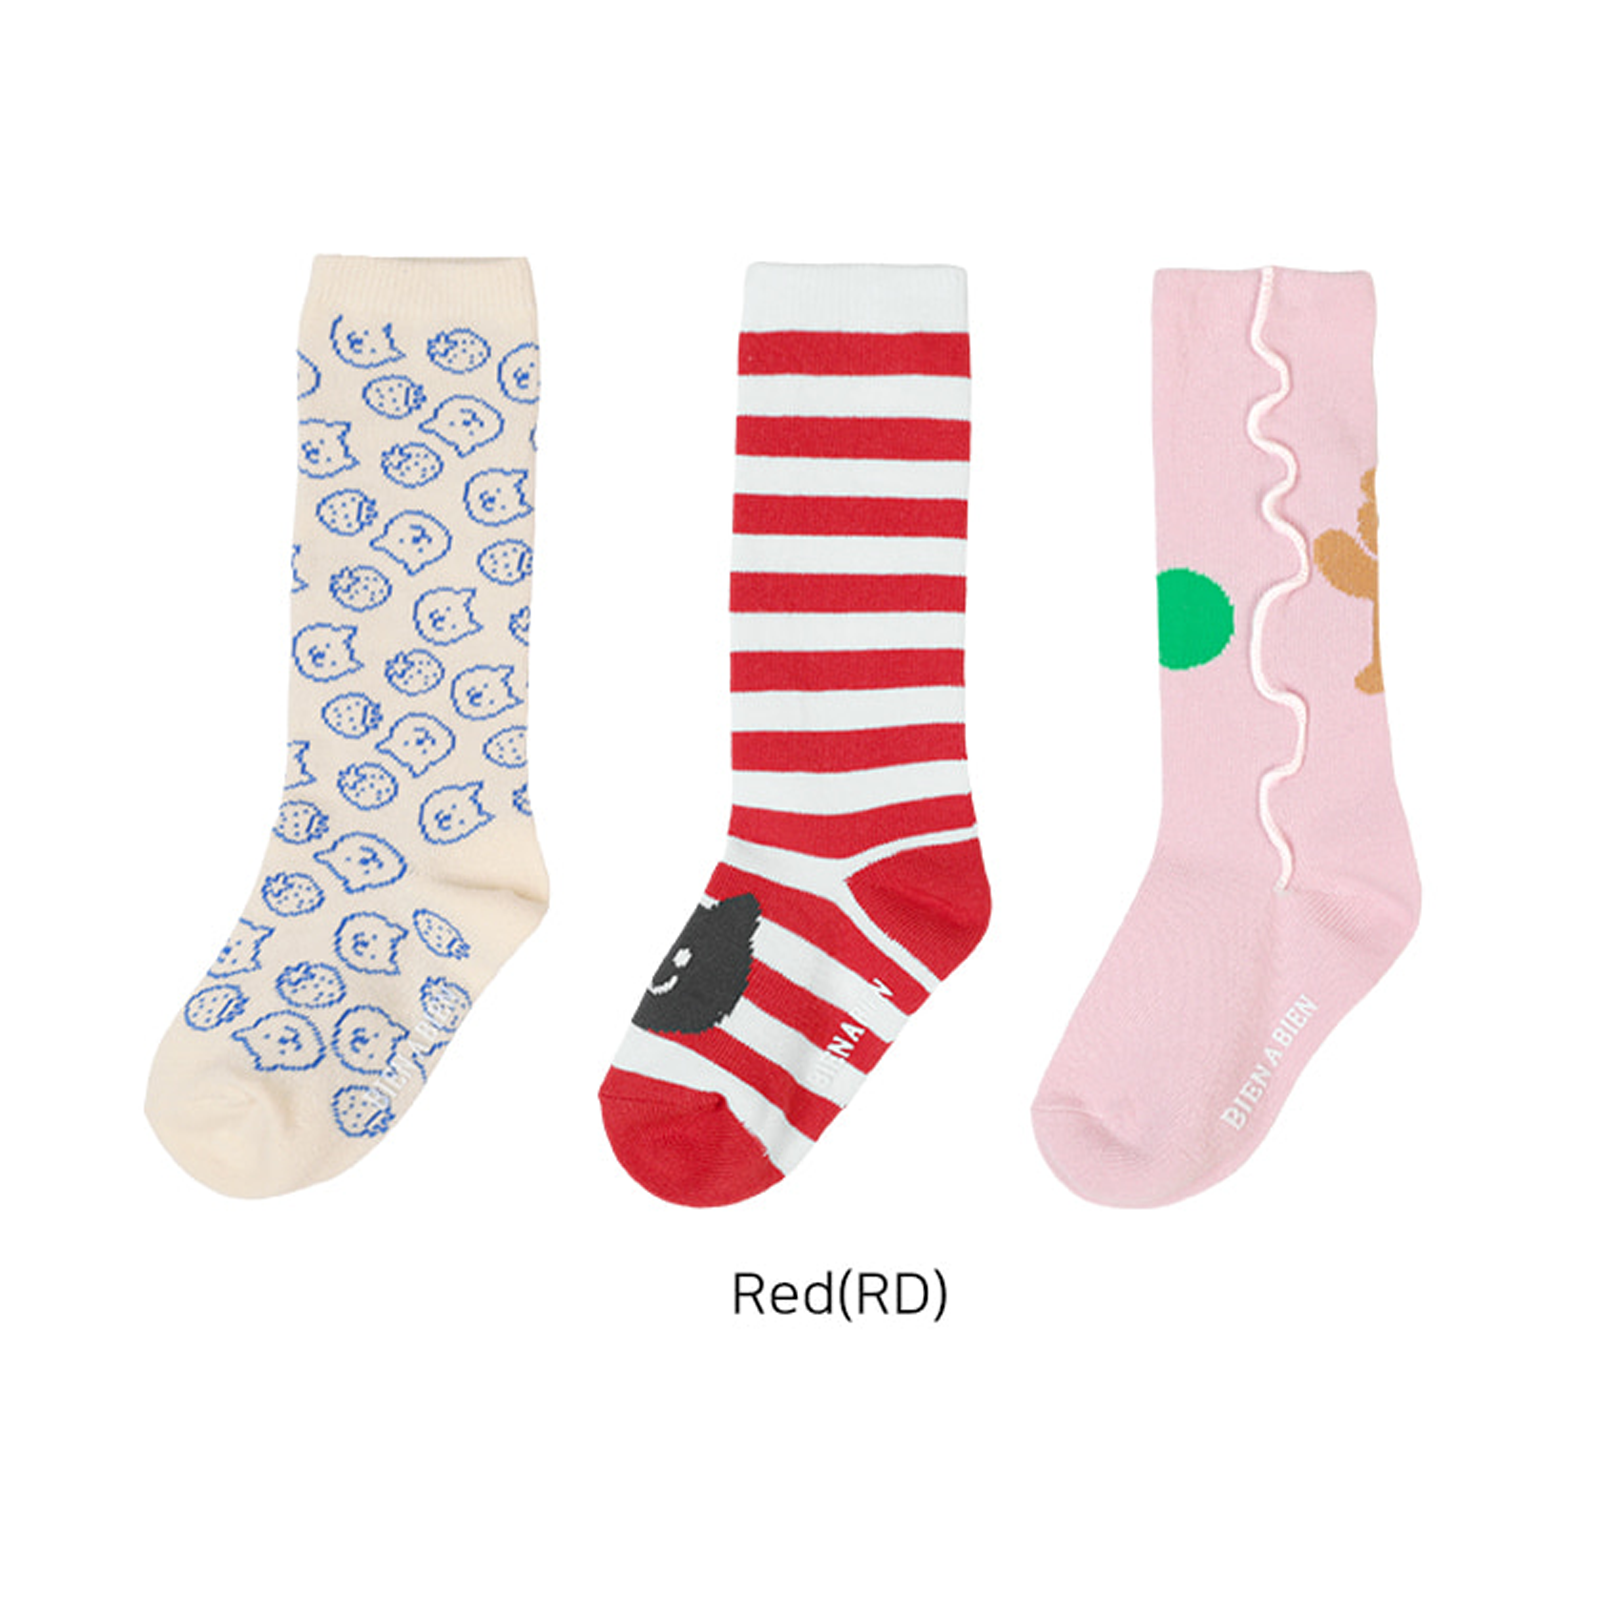 Children's Socks Set - Red